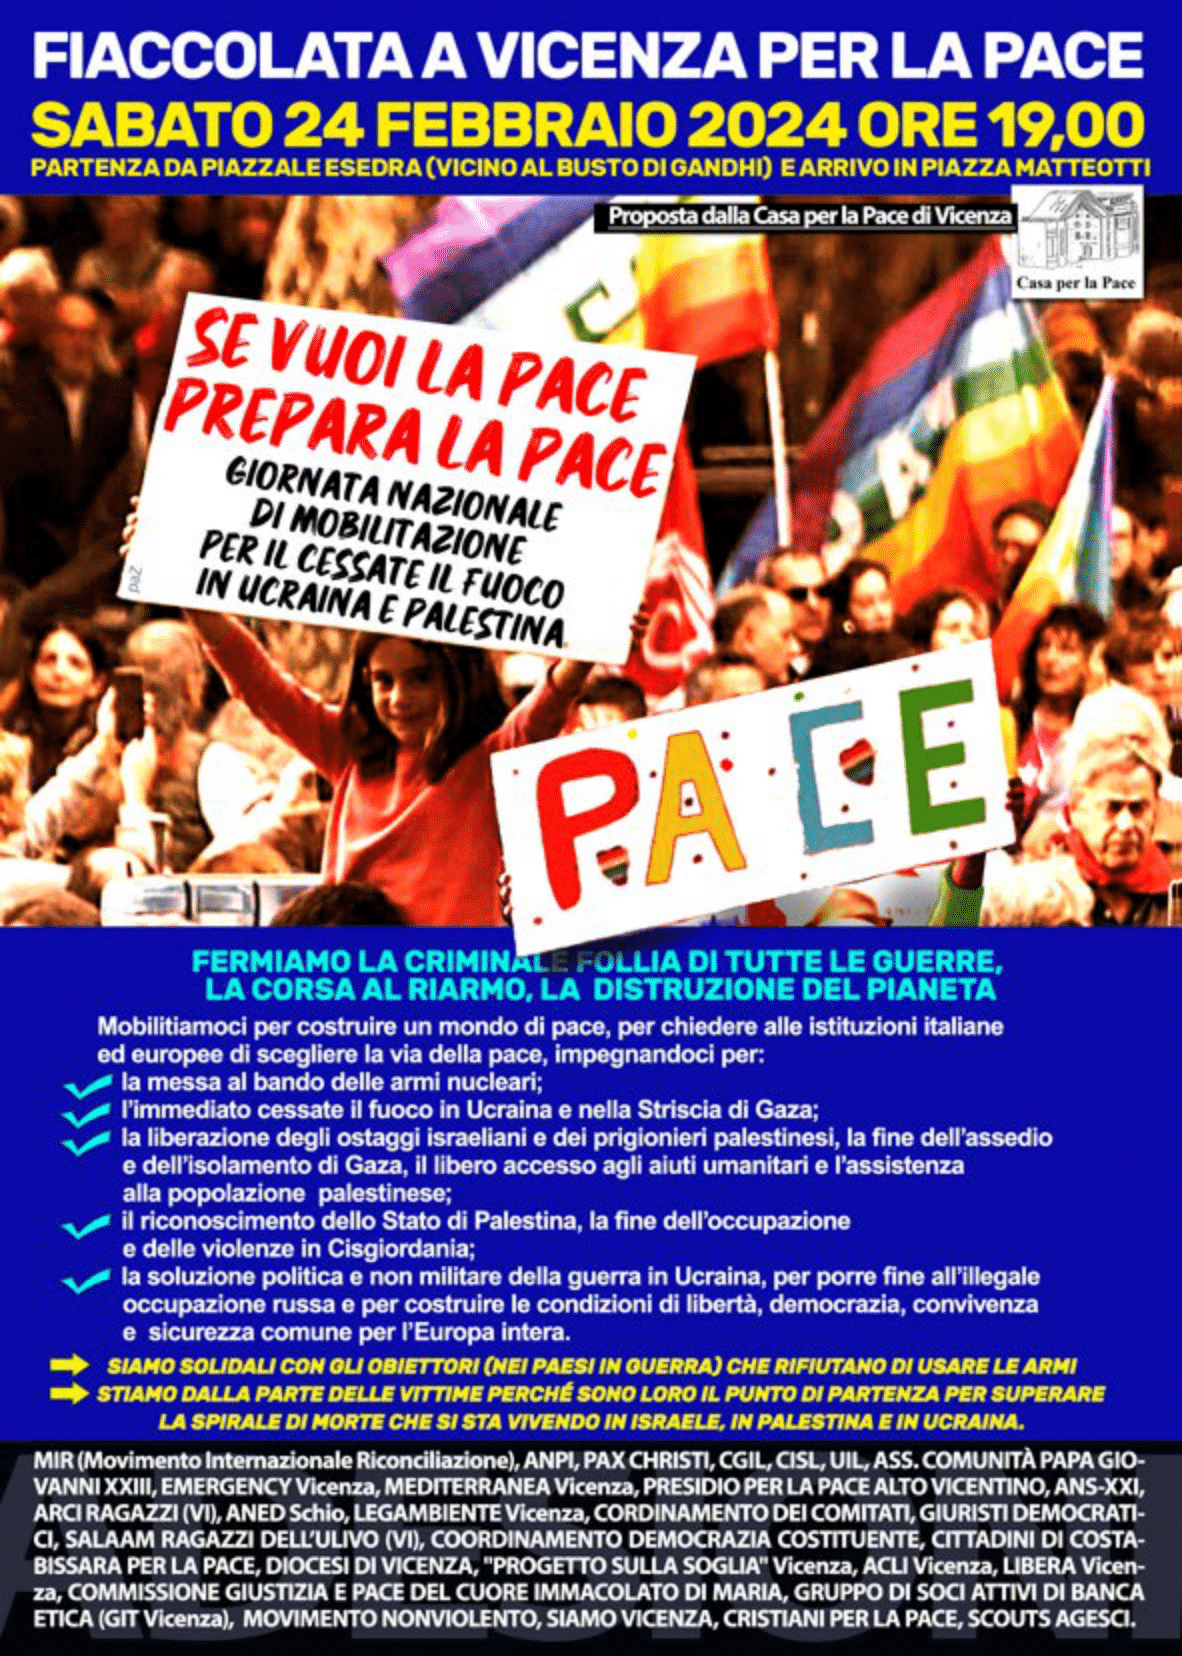 Vicenza: Fiaccolata per la pace, sabato 24 febbraio 2024